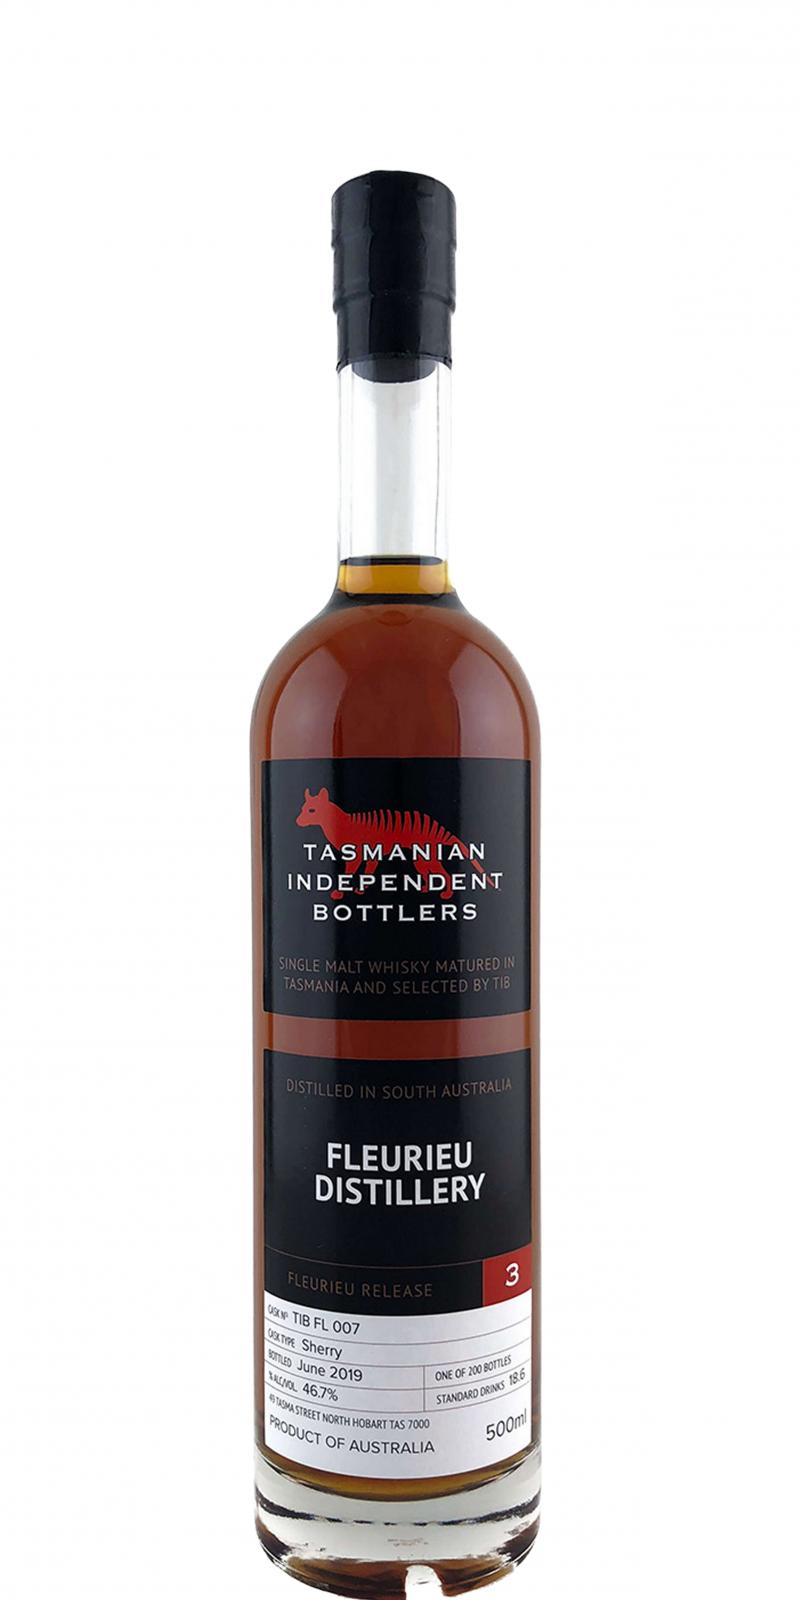 Fleurieu Distillery Fleurieu Release 3 TmIB